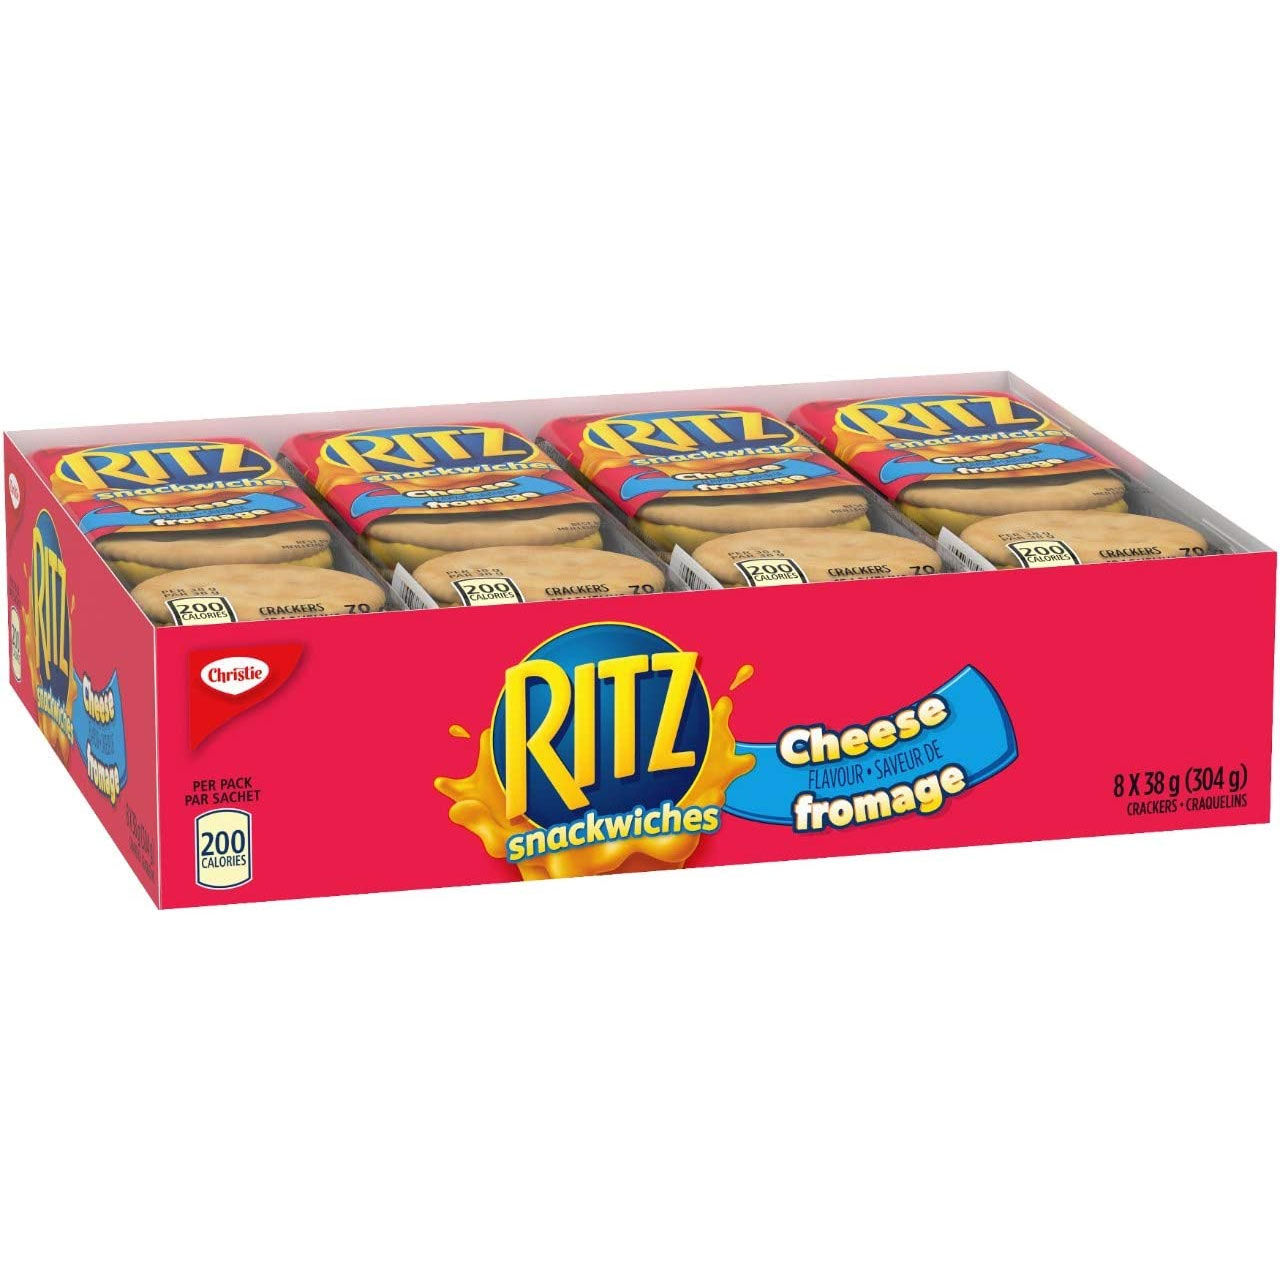 Amazon：Ritz Crackers Cheese Sandwich (8 Packs)只卖$2